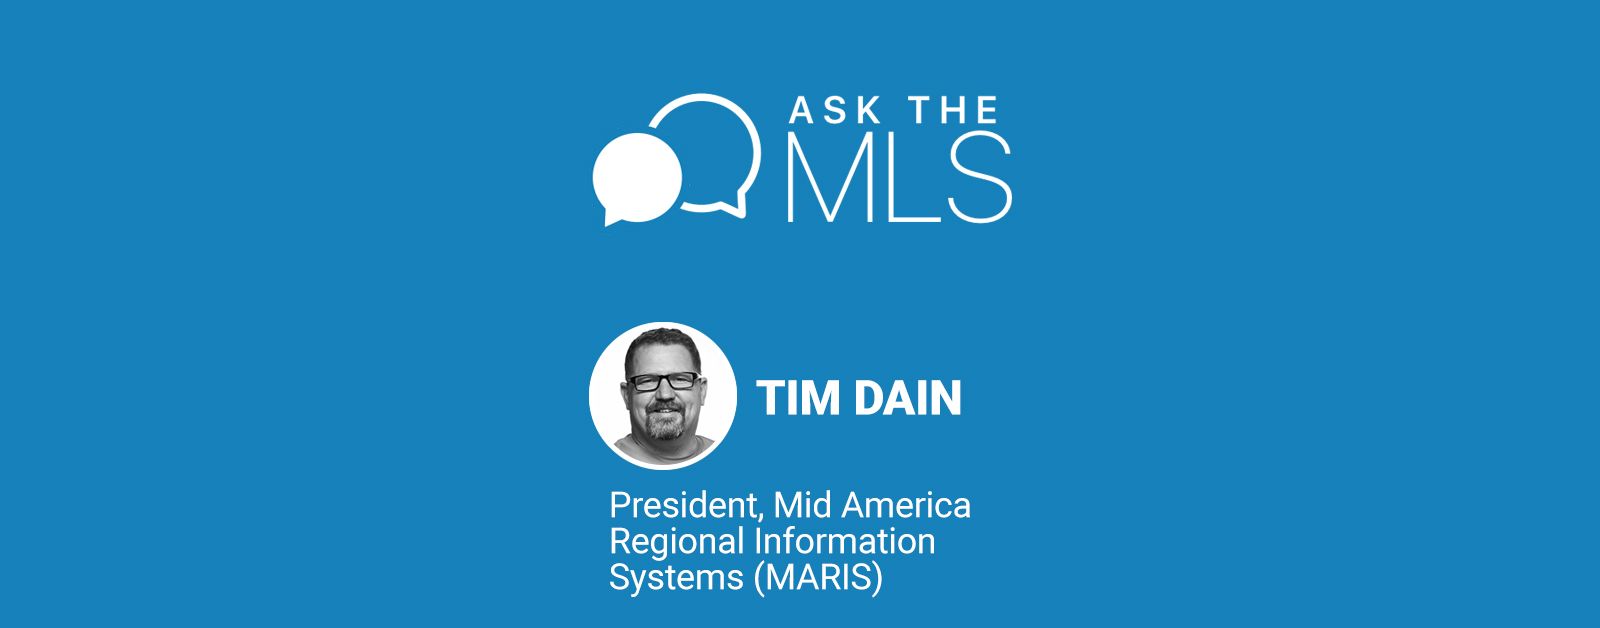 Ask the MLS: Meet Tim Dain of MARIS